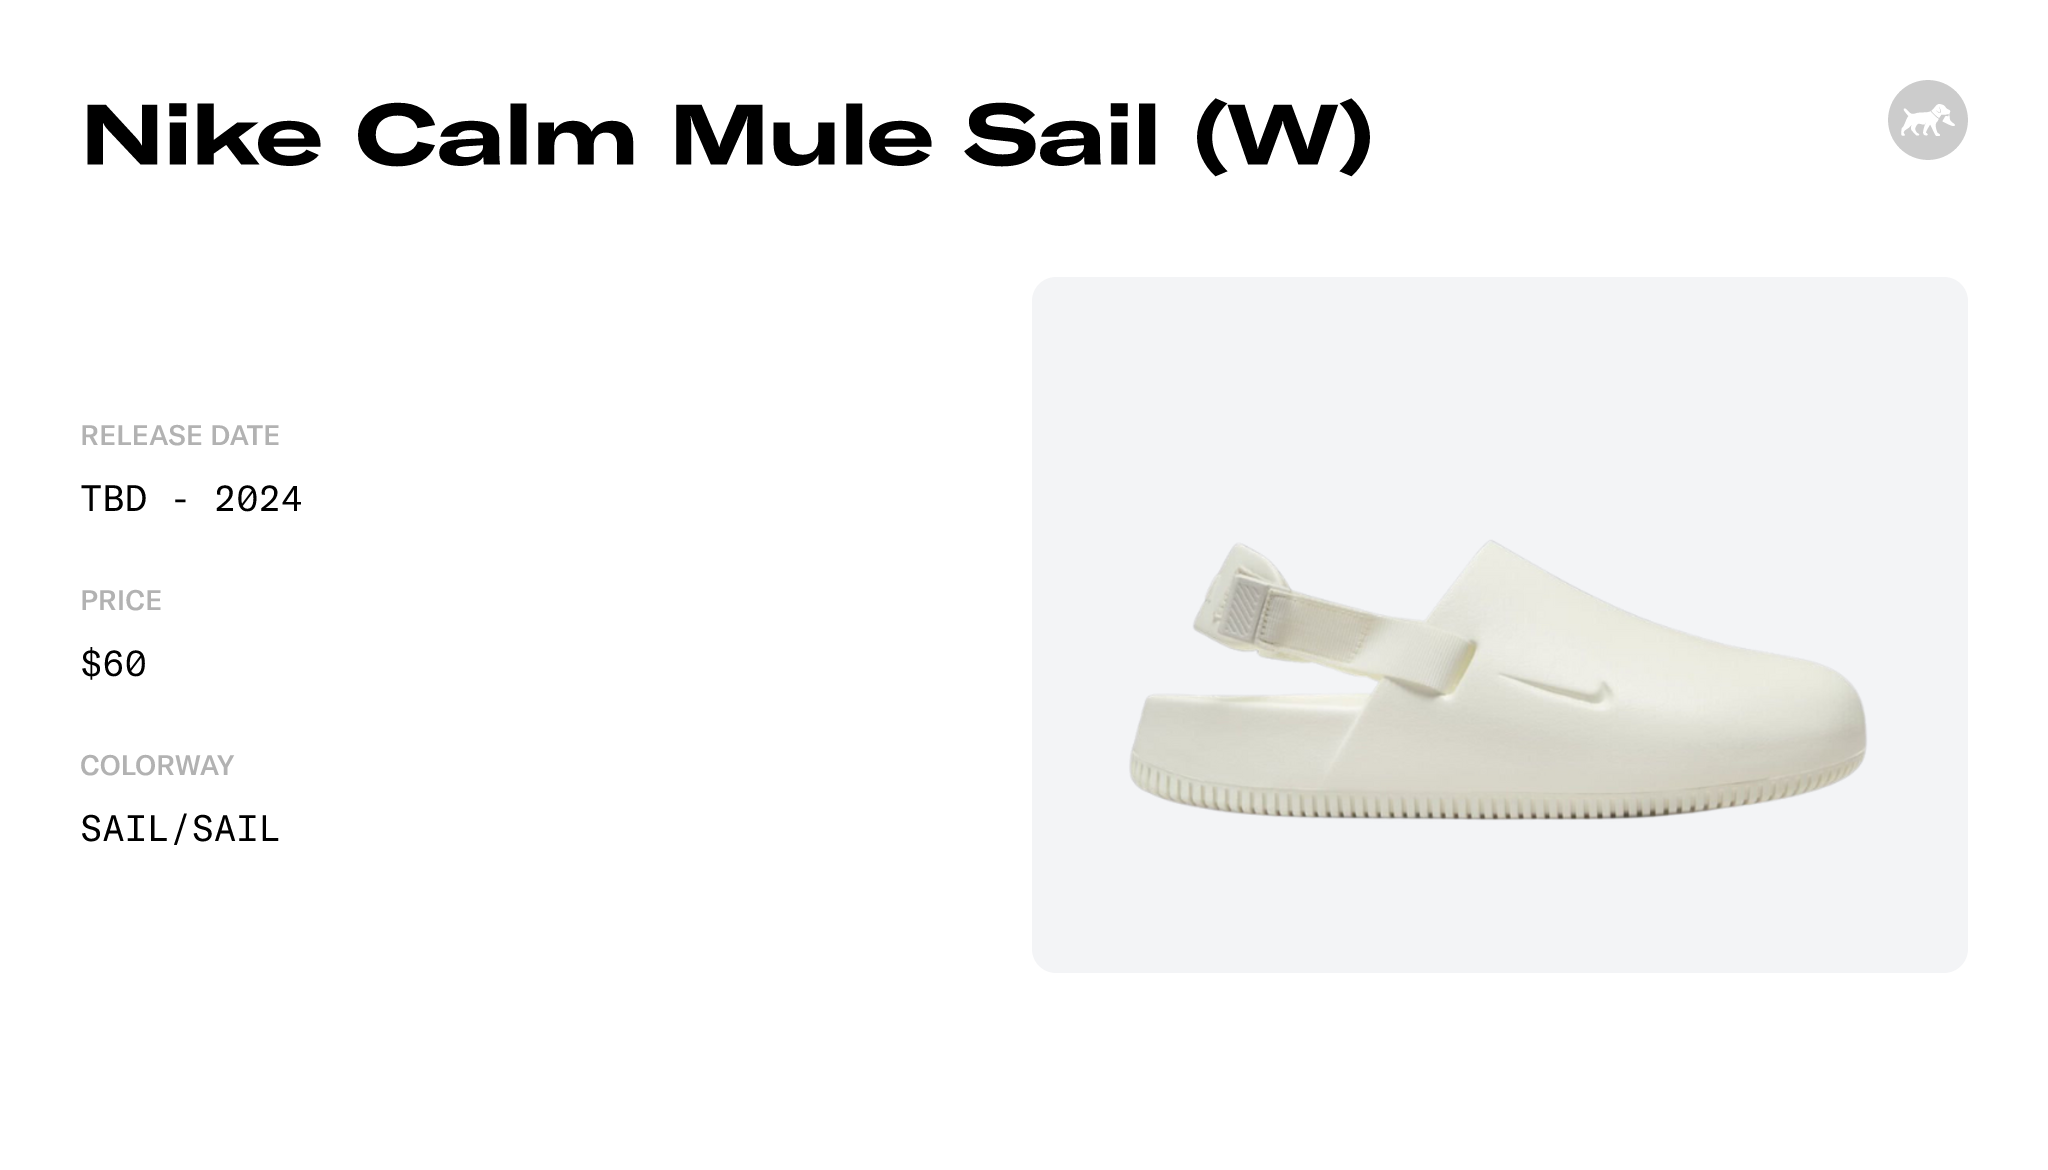 Nike Calm Mule Sail (W) - FB2185-100 Raffles and Release Date